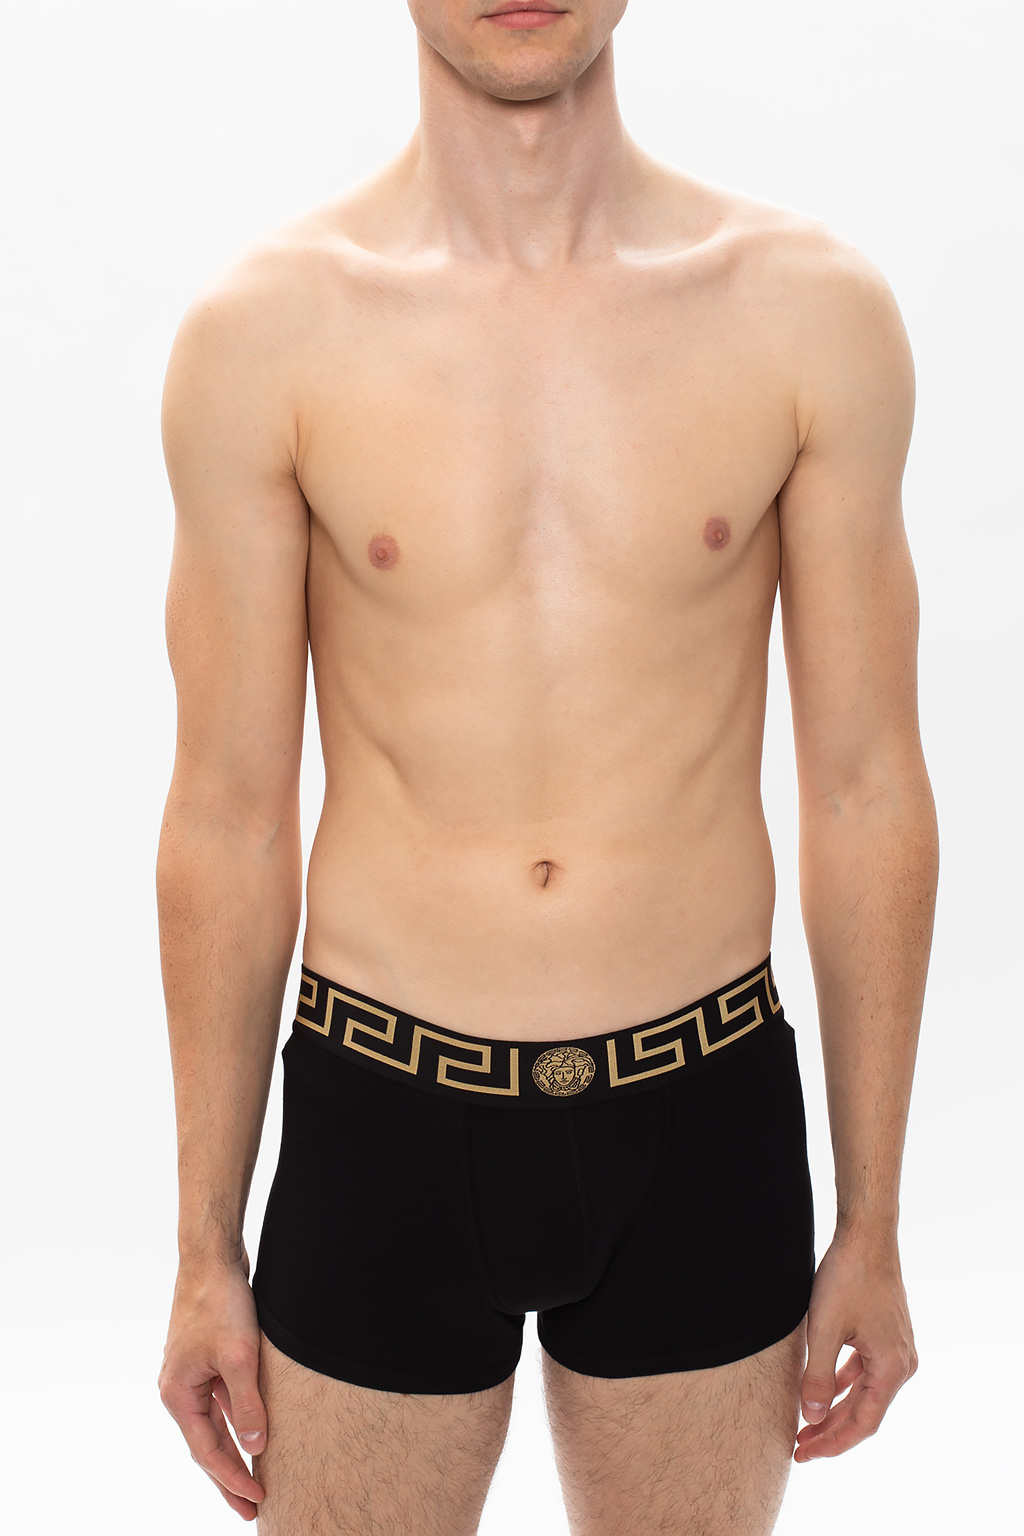 Versace Greek key pattern boxers 2-pack, Men's Clothing